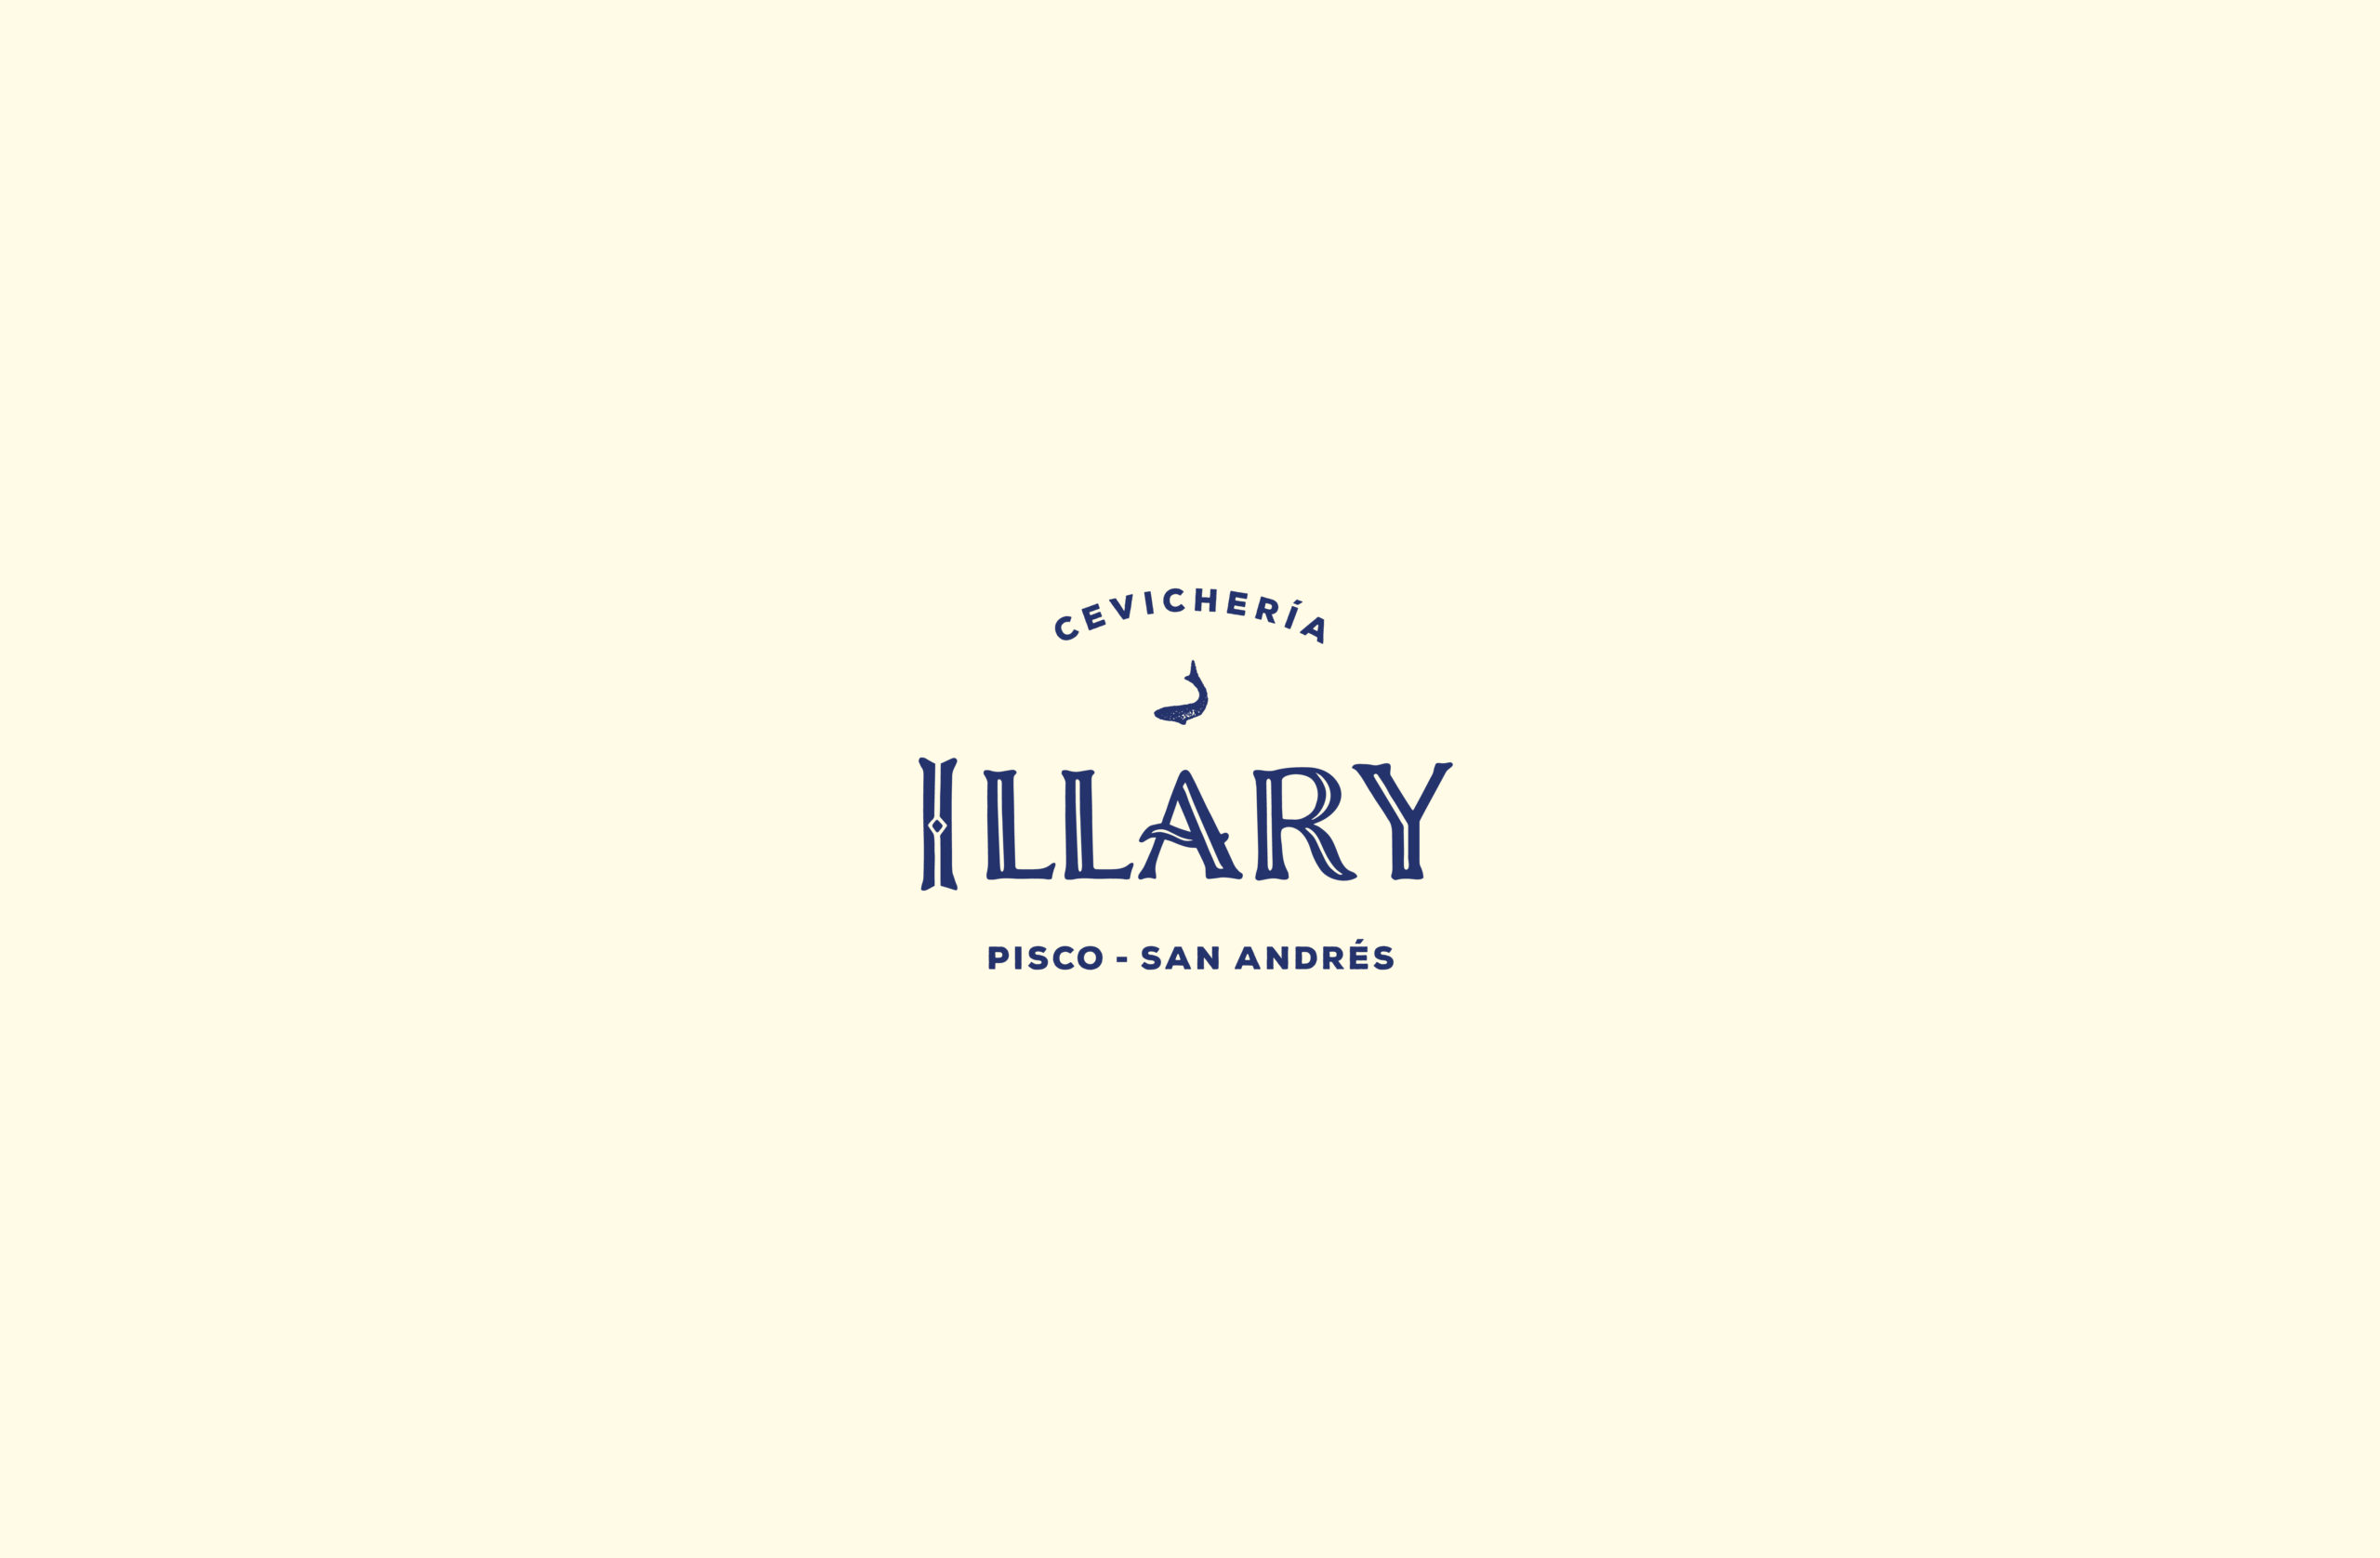 Branding design for the restaurant Cevicheria Illary